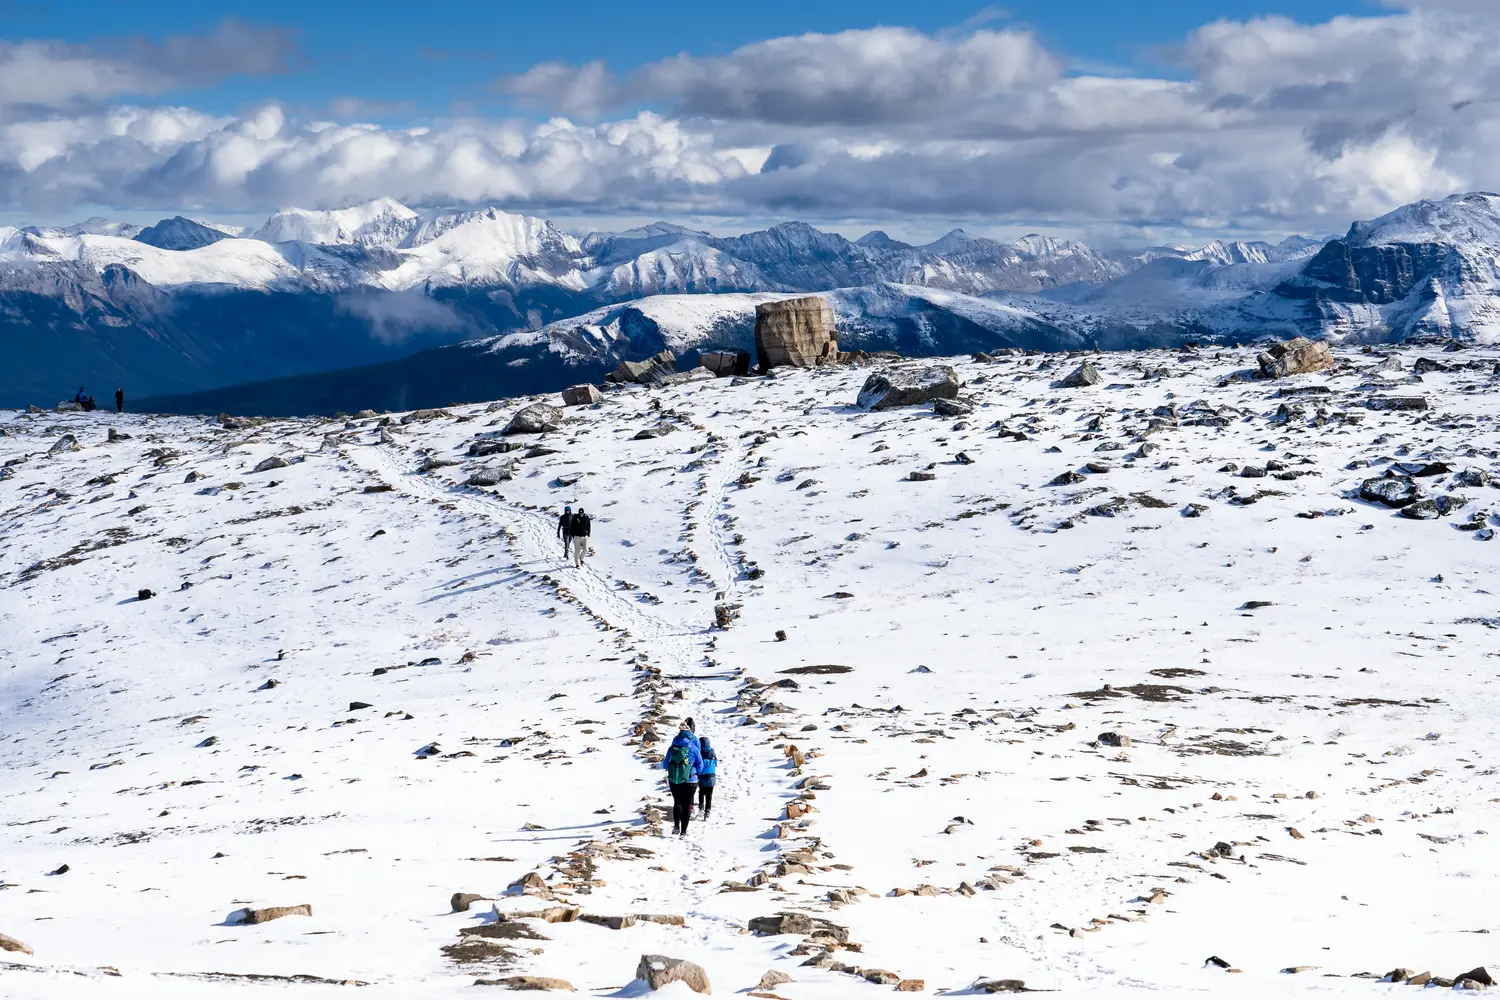 Οι τουρίστες περπατούν κατά μήκος ενός χιονισμένου μονοπατιού στην κορυφή του βουνού στο Εθνικό Πάρκο Jasper, Καναδάς